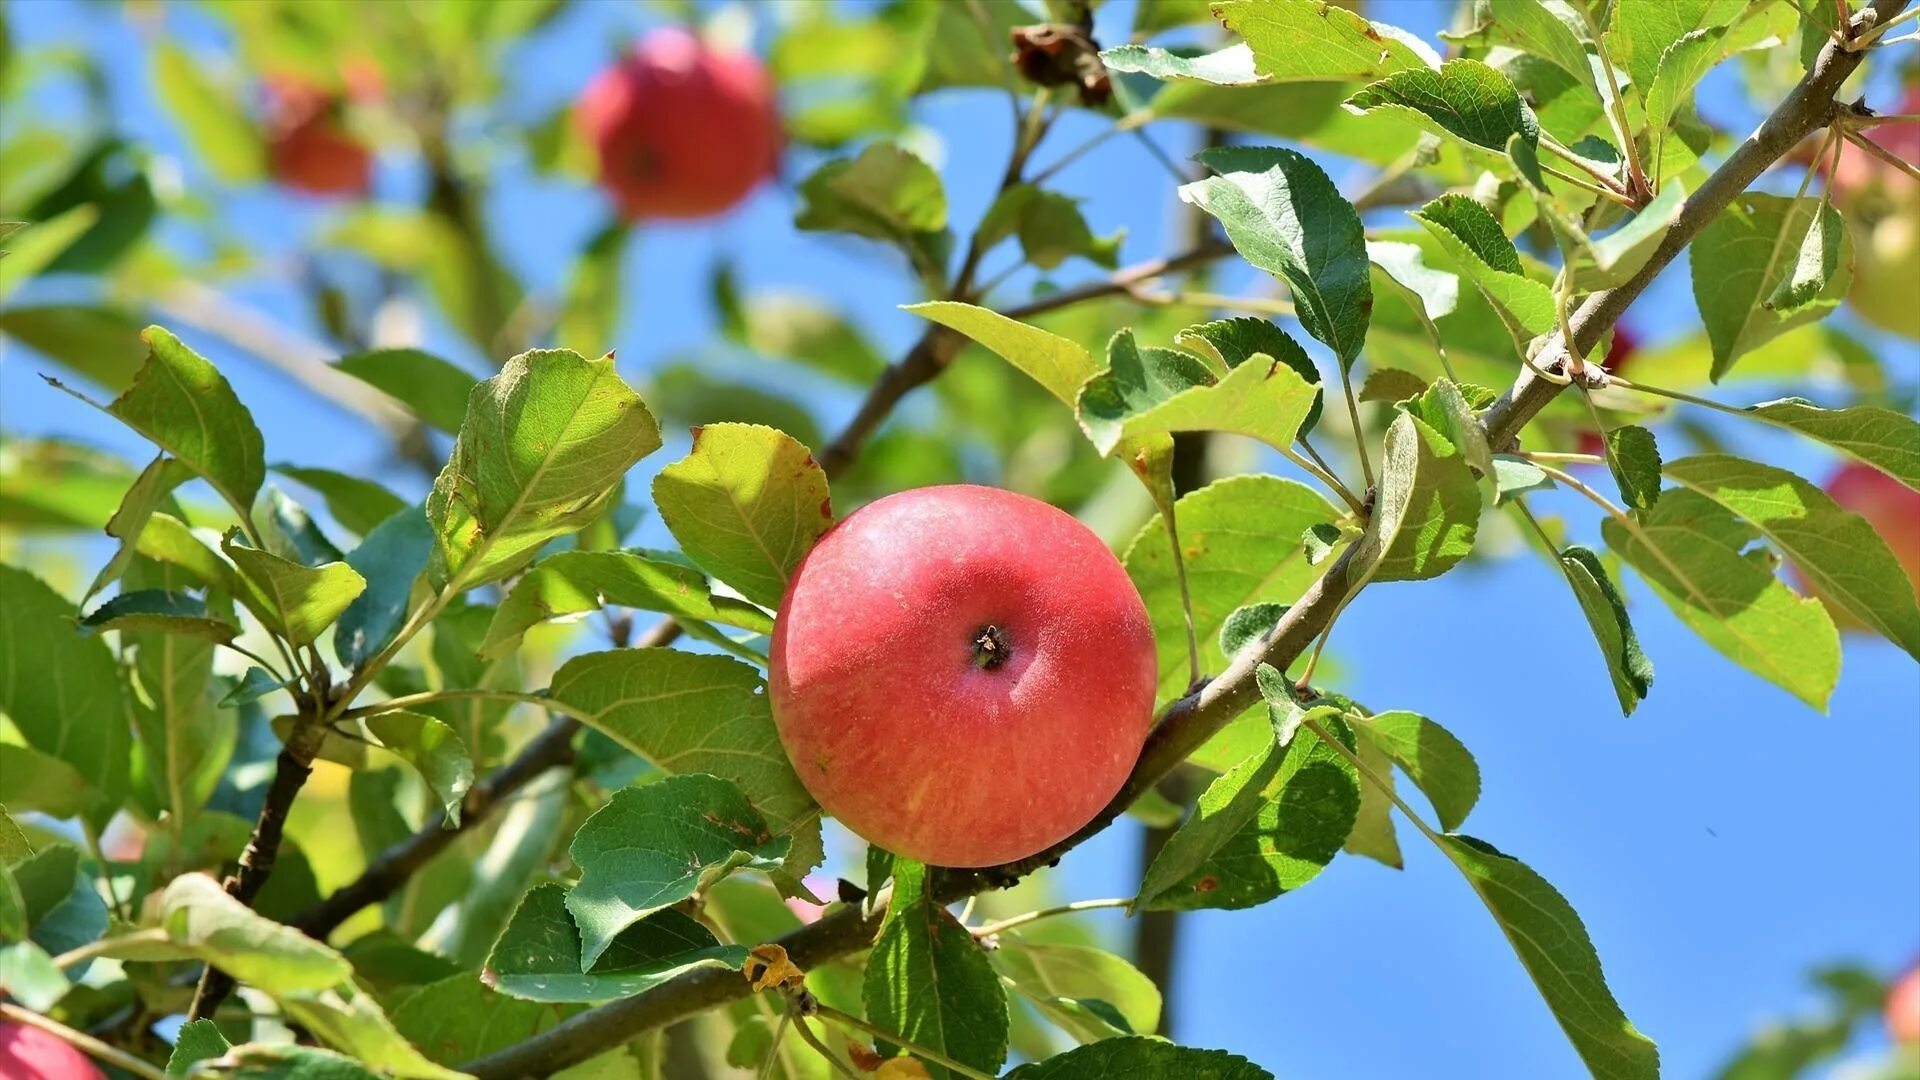 Яблоня "Рождественское" (Malus domestica). Пинк леди яблоки дерево. Яблоки на дереве. Яблоня с яблоками. Дерево яблоня молодая